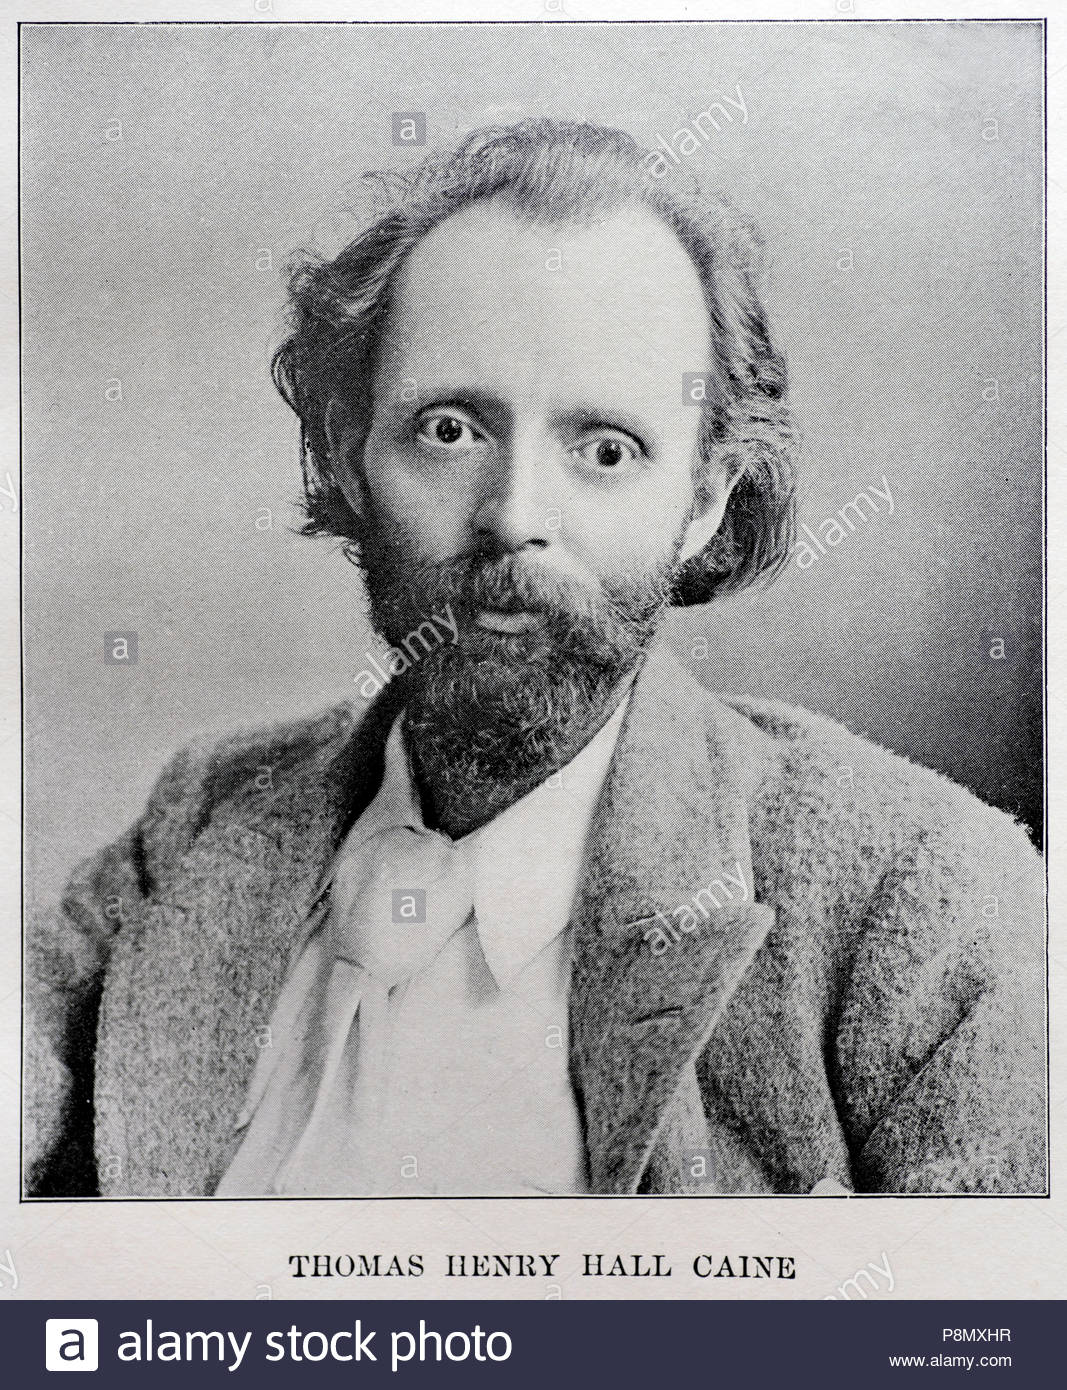 Thomas Henry Hall Caine ritratto,1853-1931, era un romanziere britannico e poeta, immagine dal c1900 Foto Stock